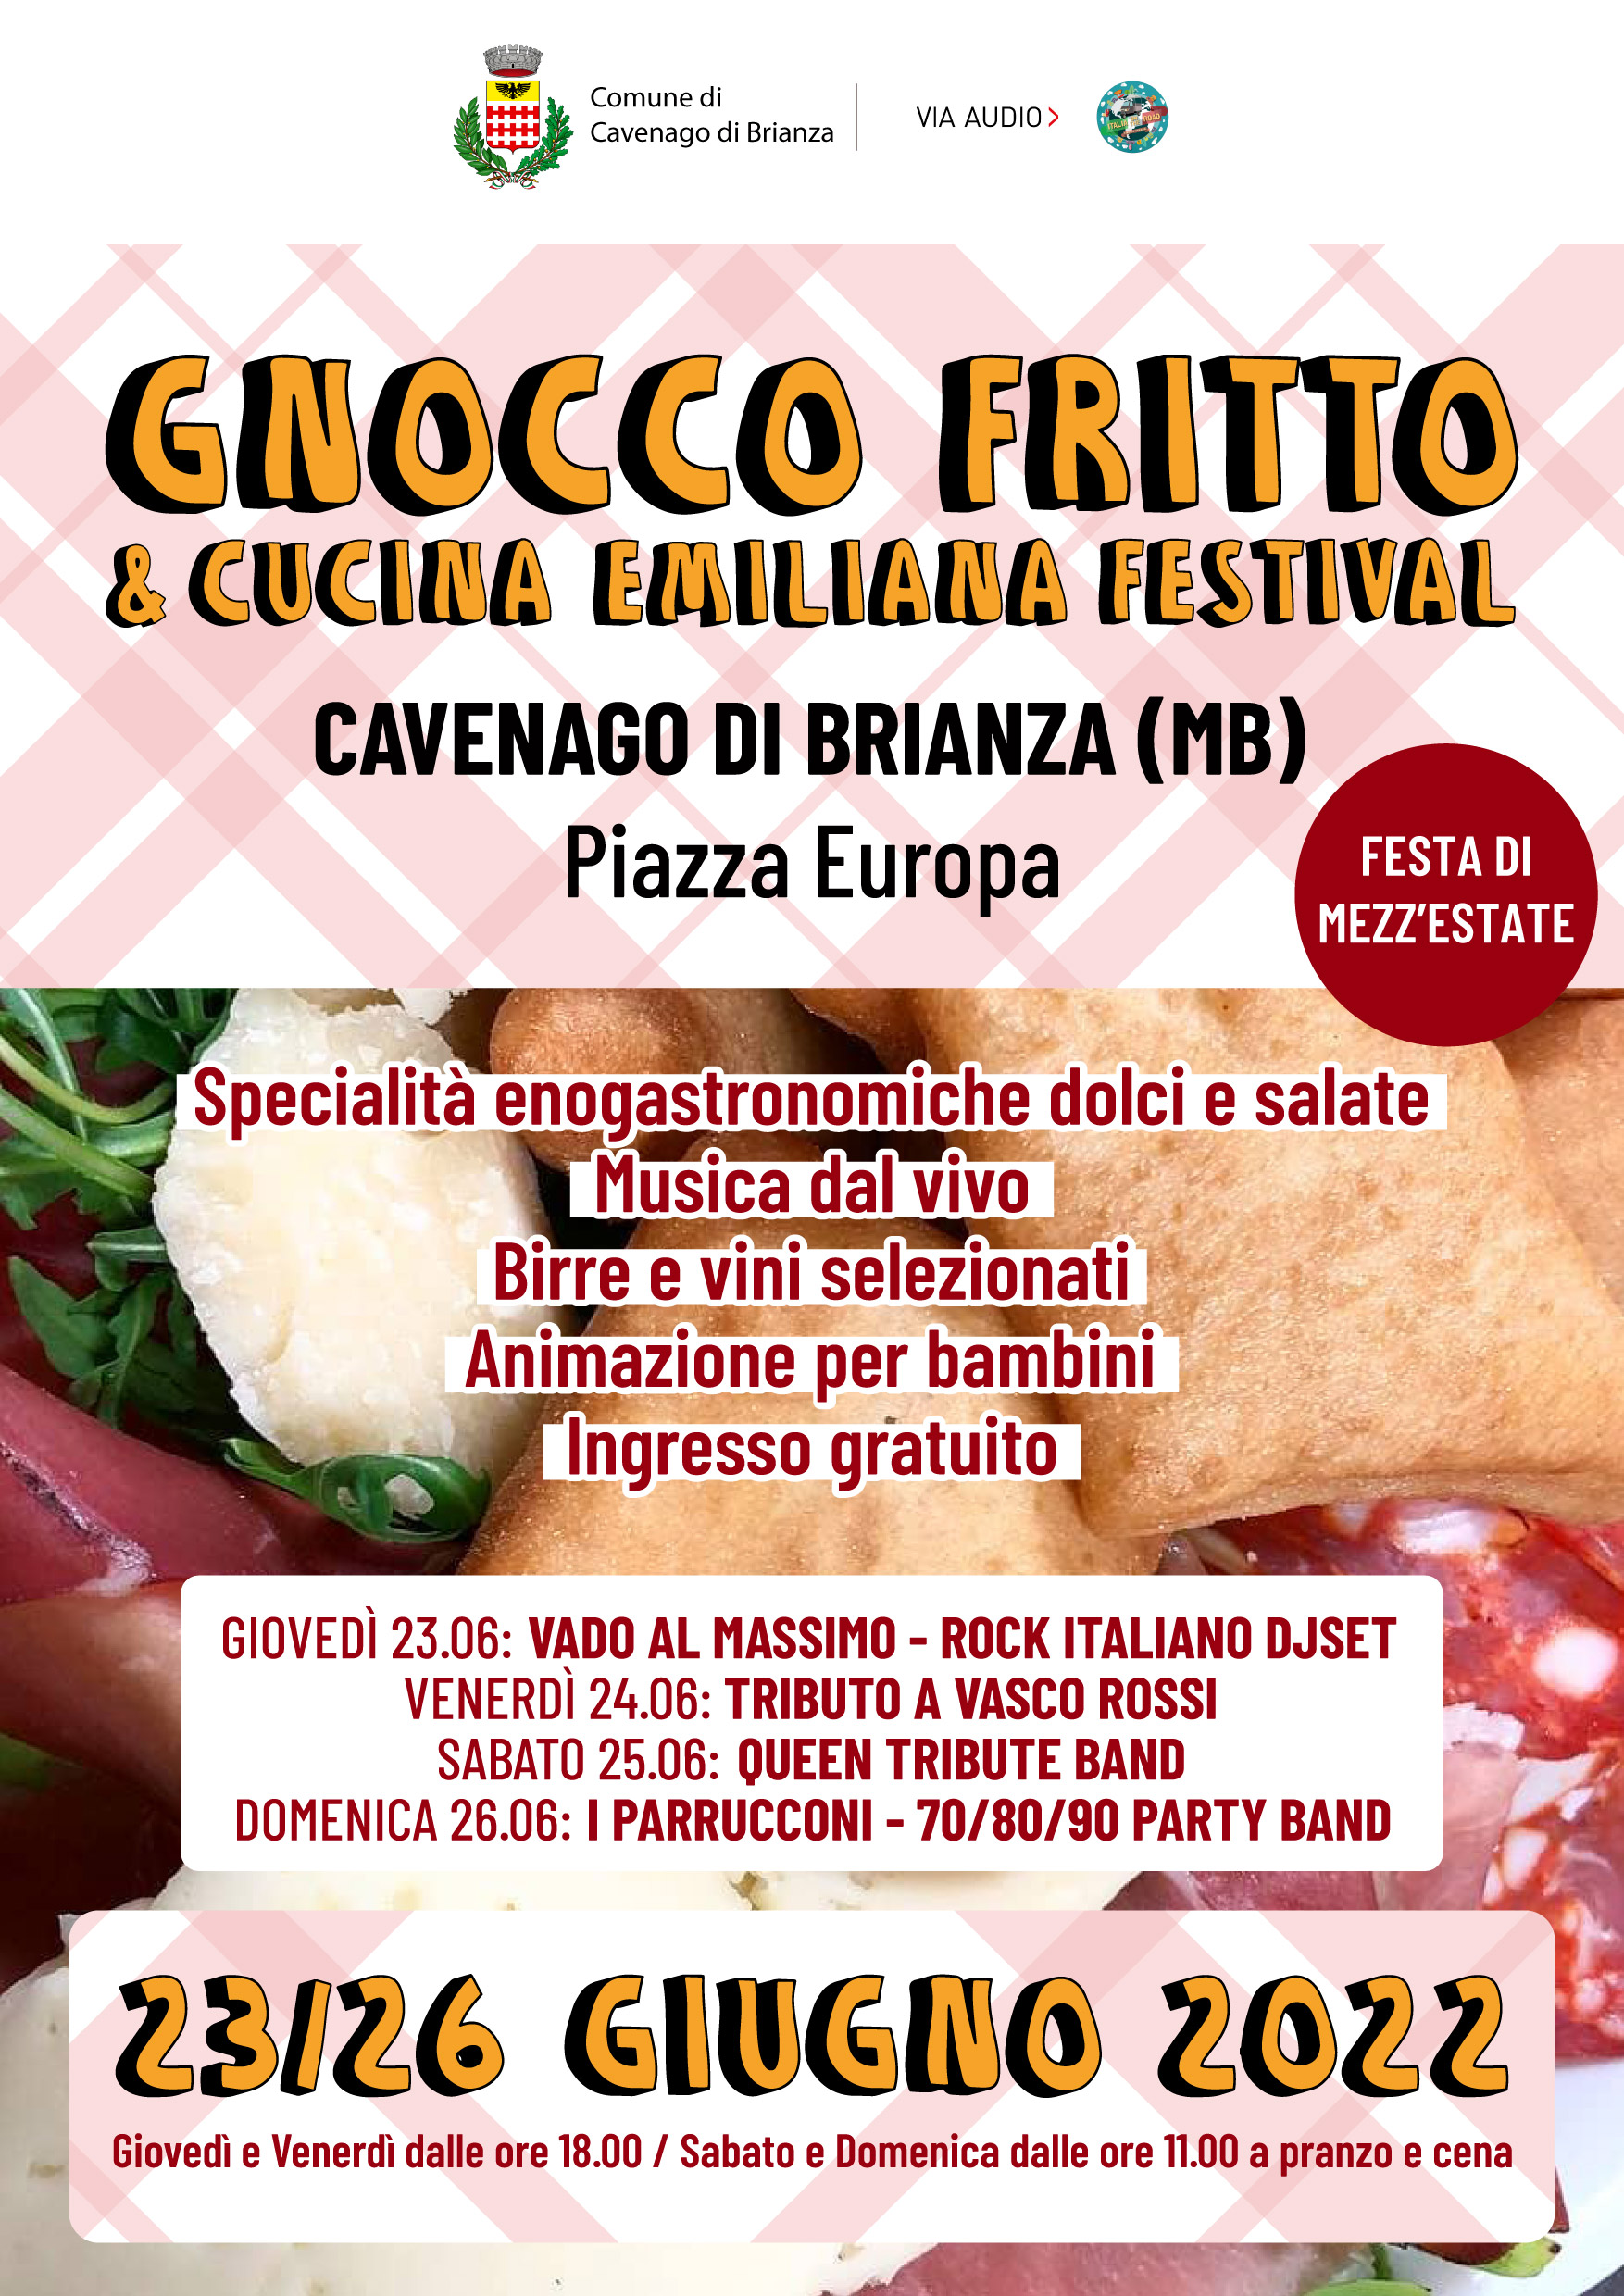 FESTA DI MEZZA ESTATE - Gnocco Fritto & Cucina Emiliana Festival